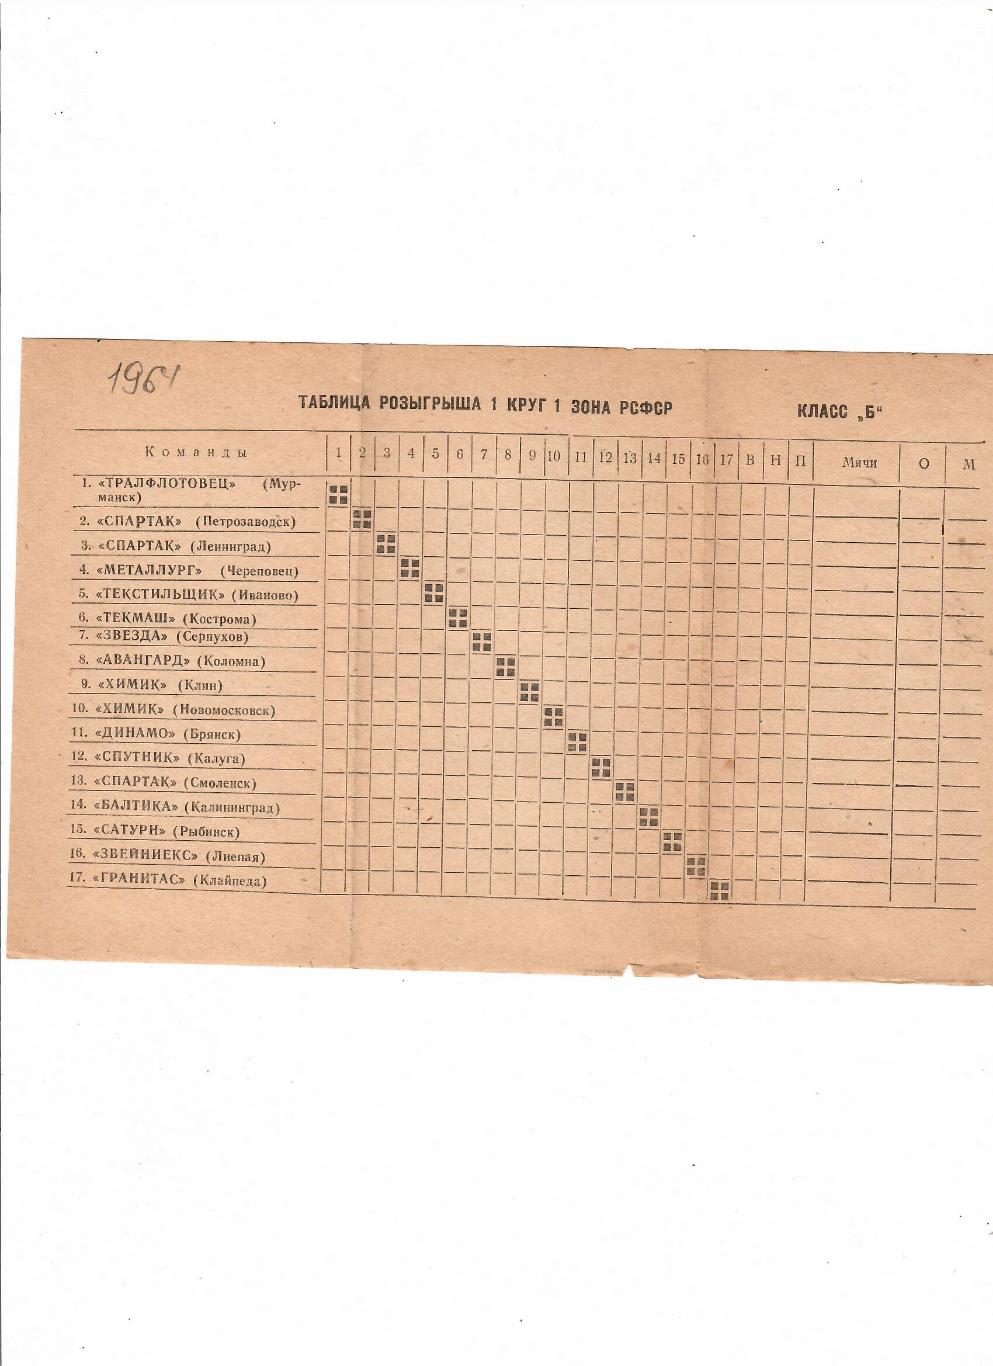 Таблица розыгрыша 1964 класс Б 1 зона